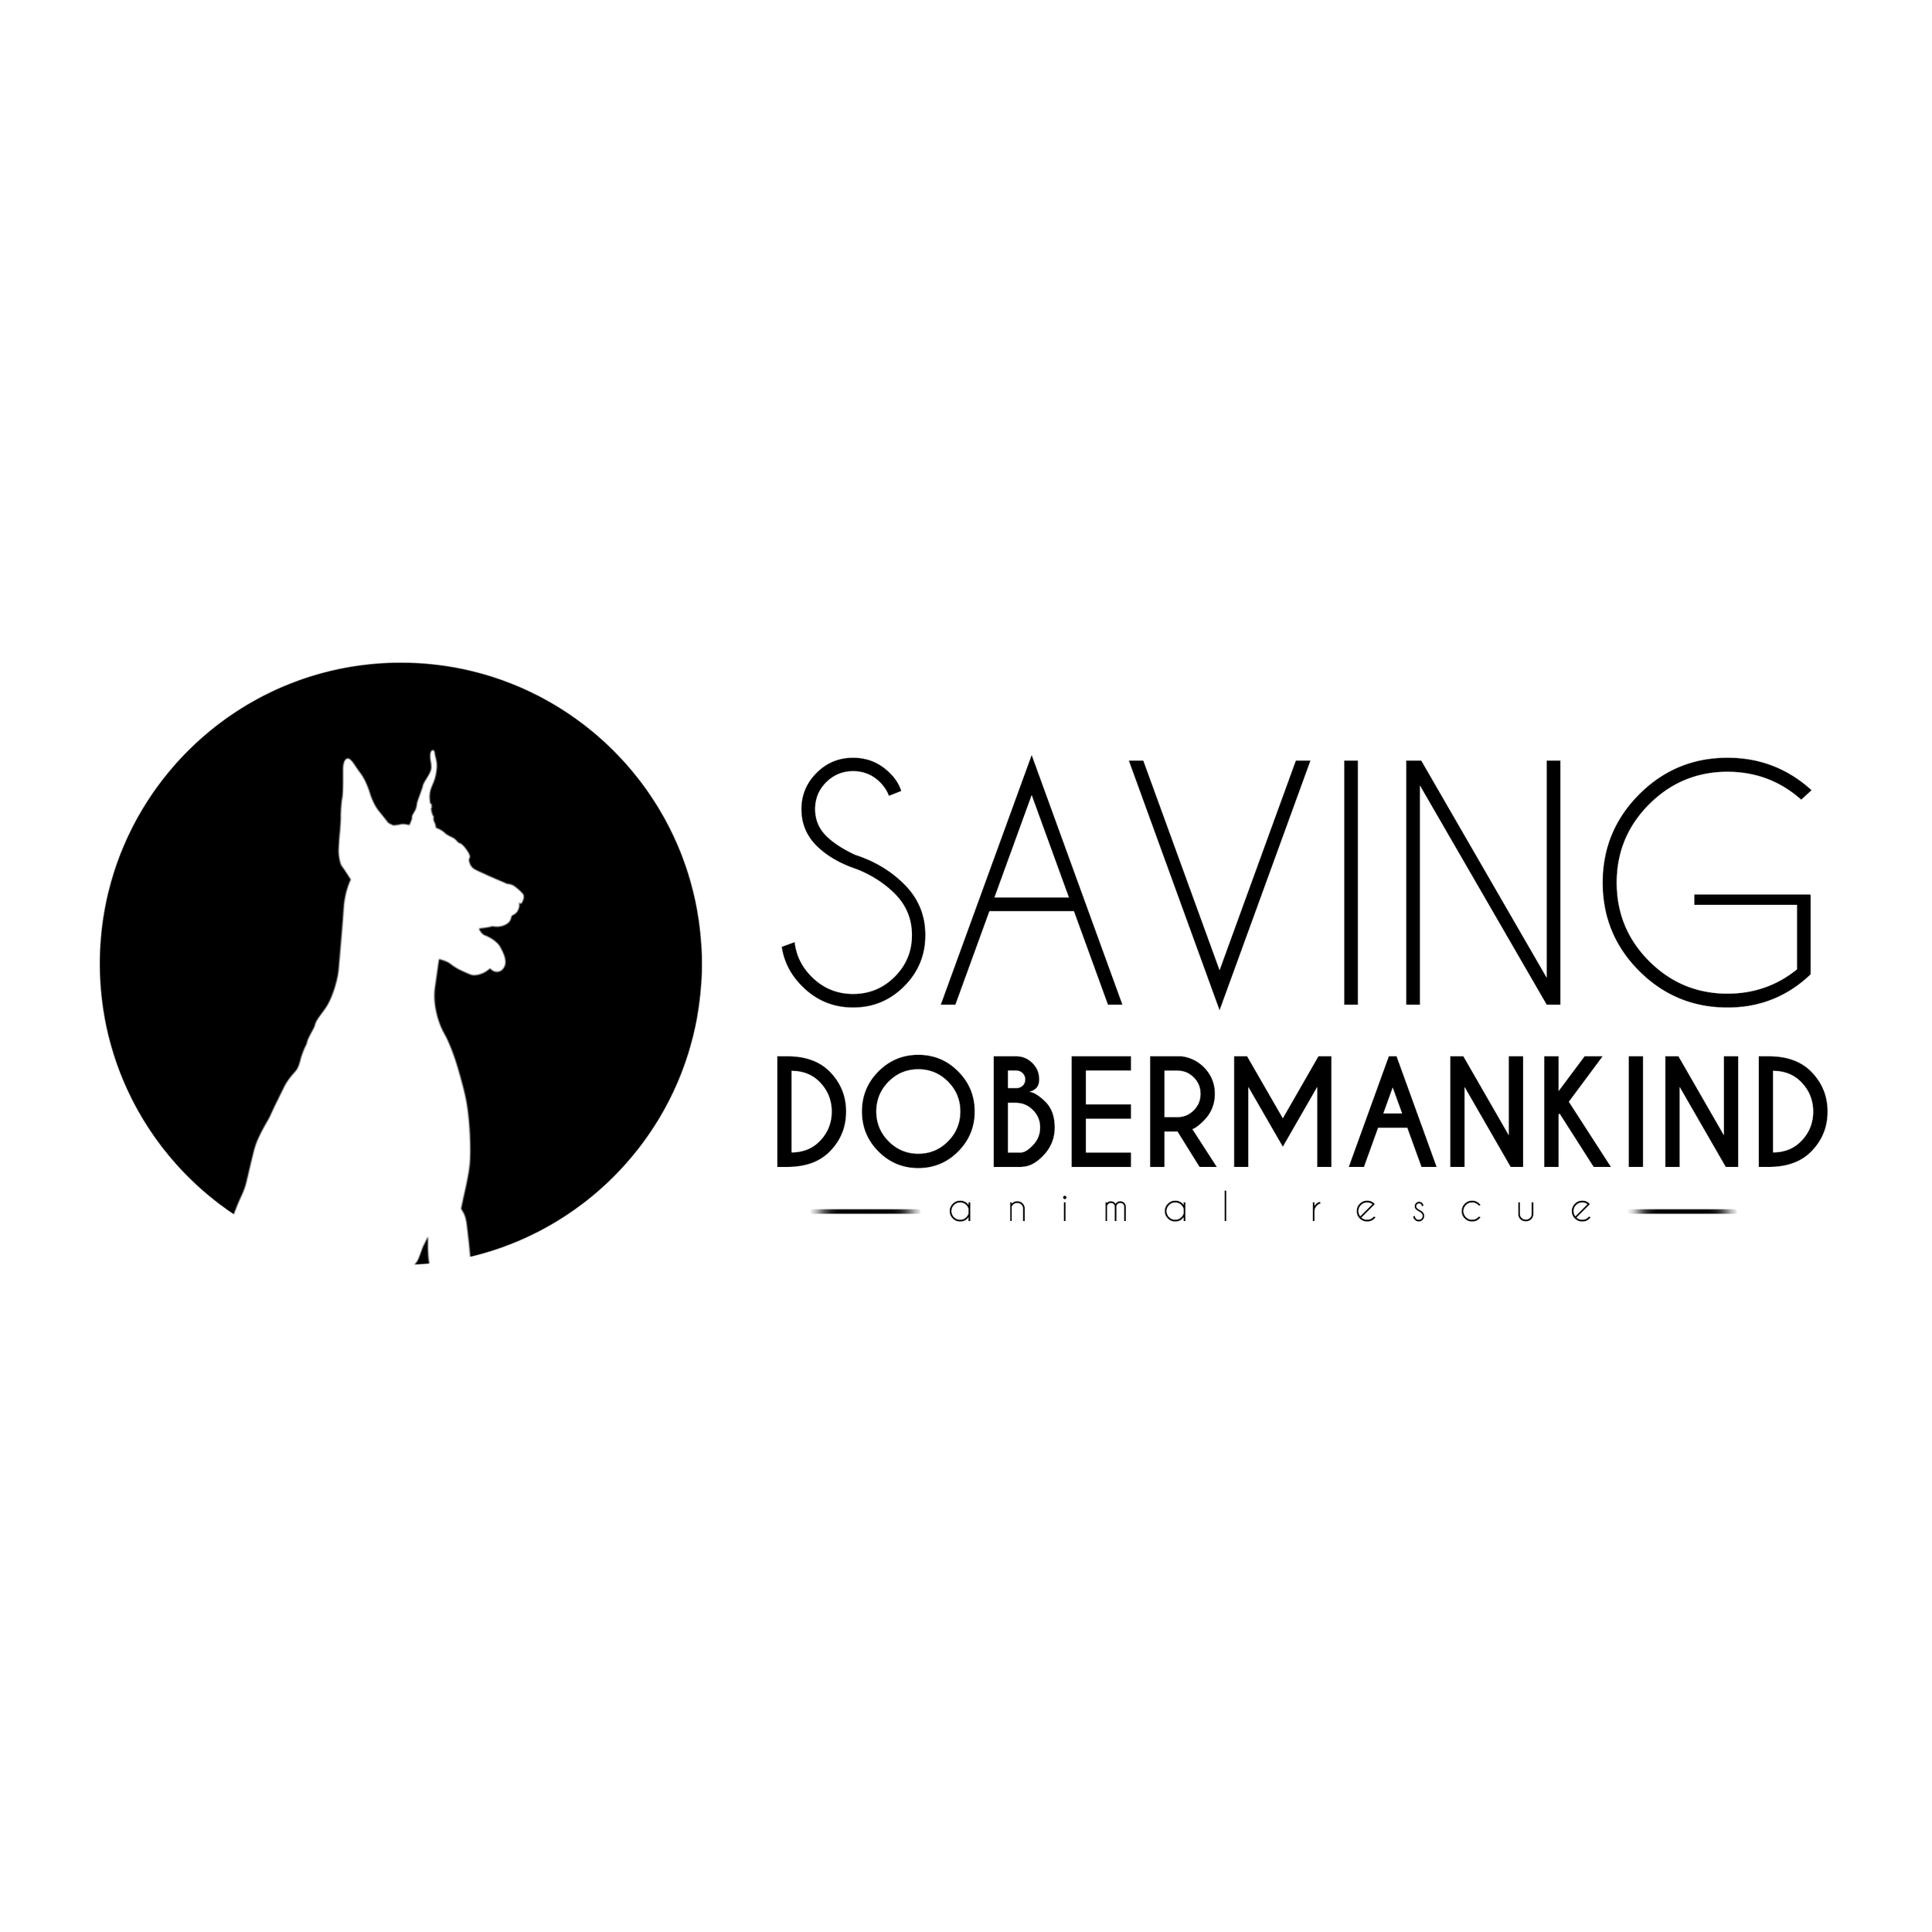 savingdobermankind.png